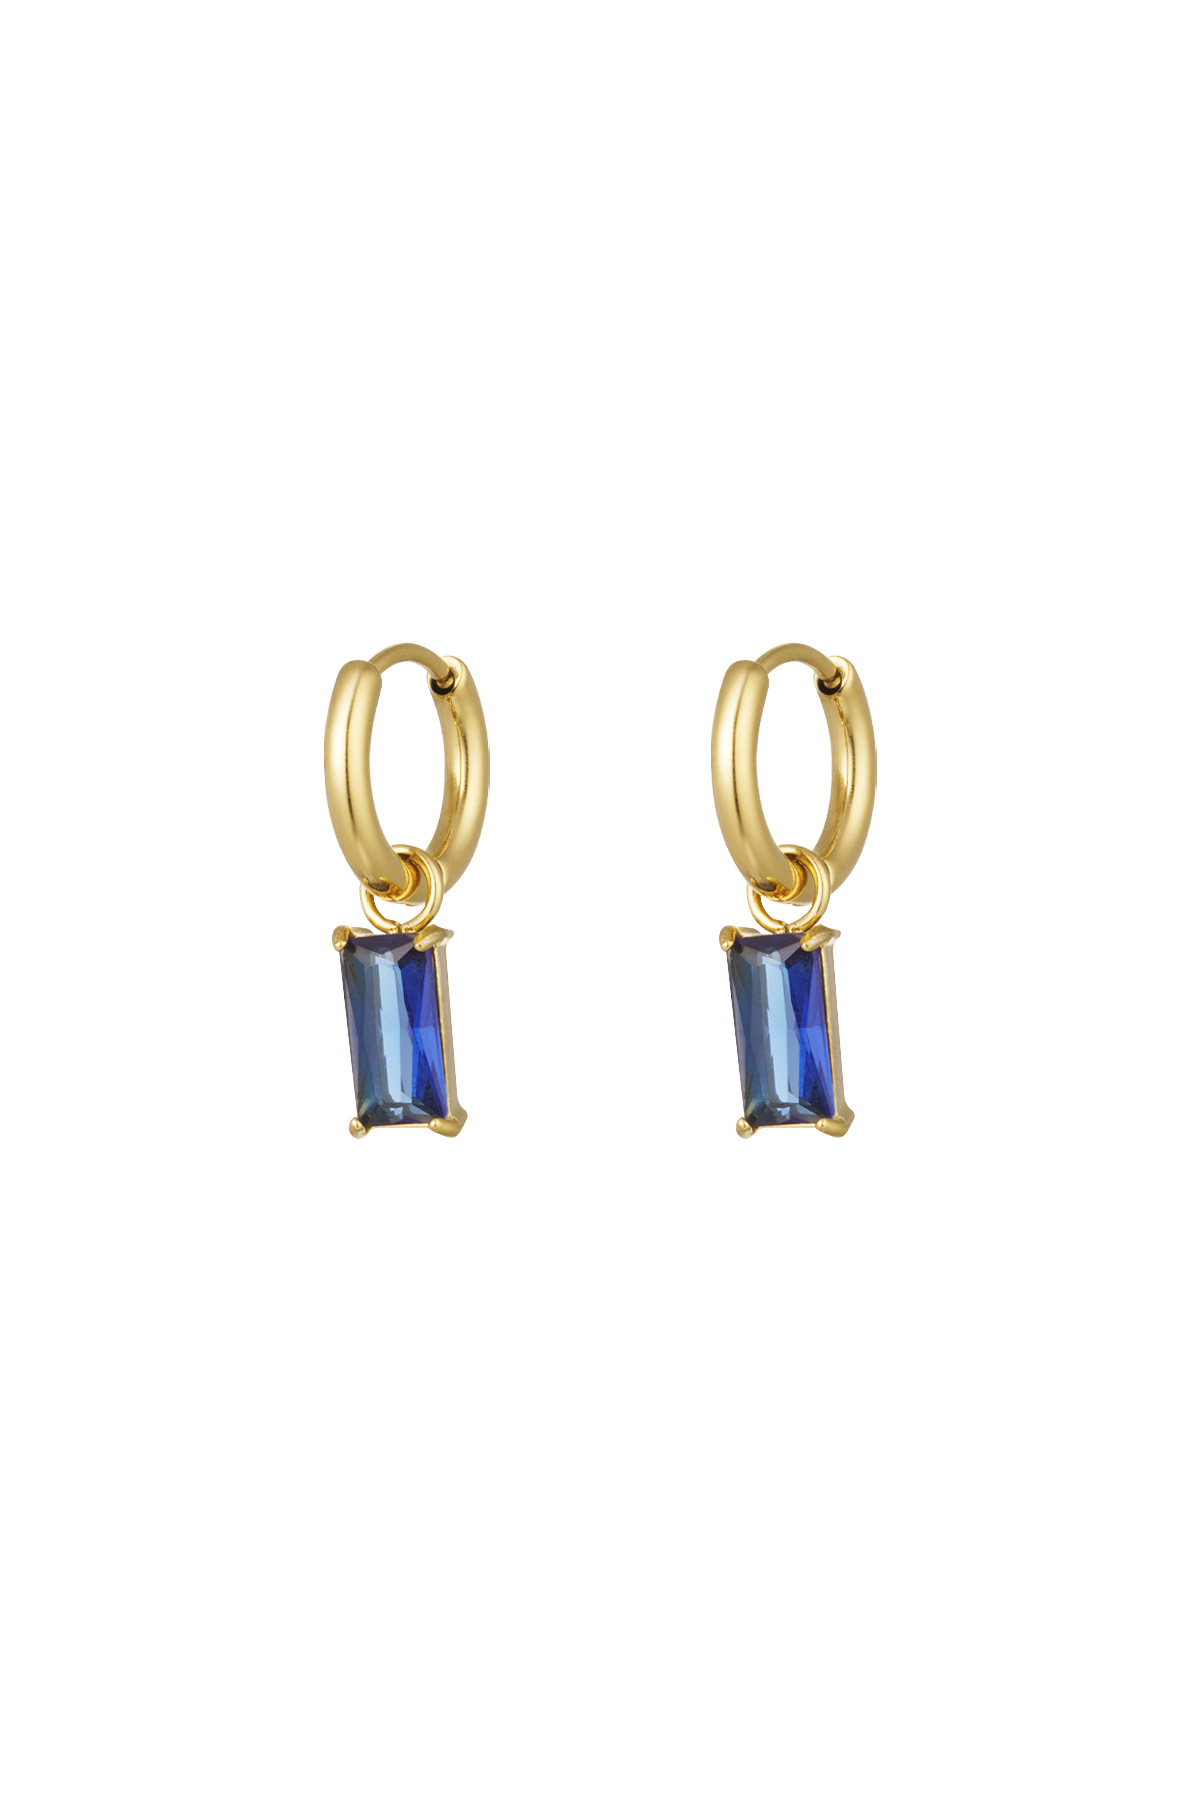 Oorbellen langwerpig steentje - goud/blauw h5 